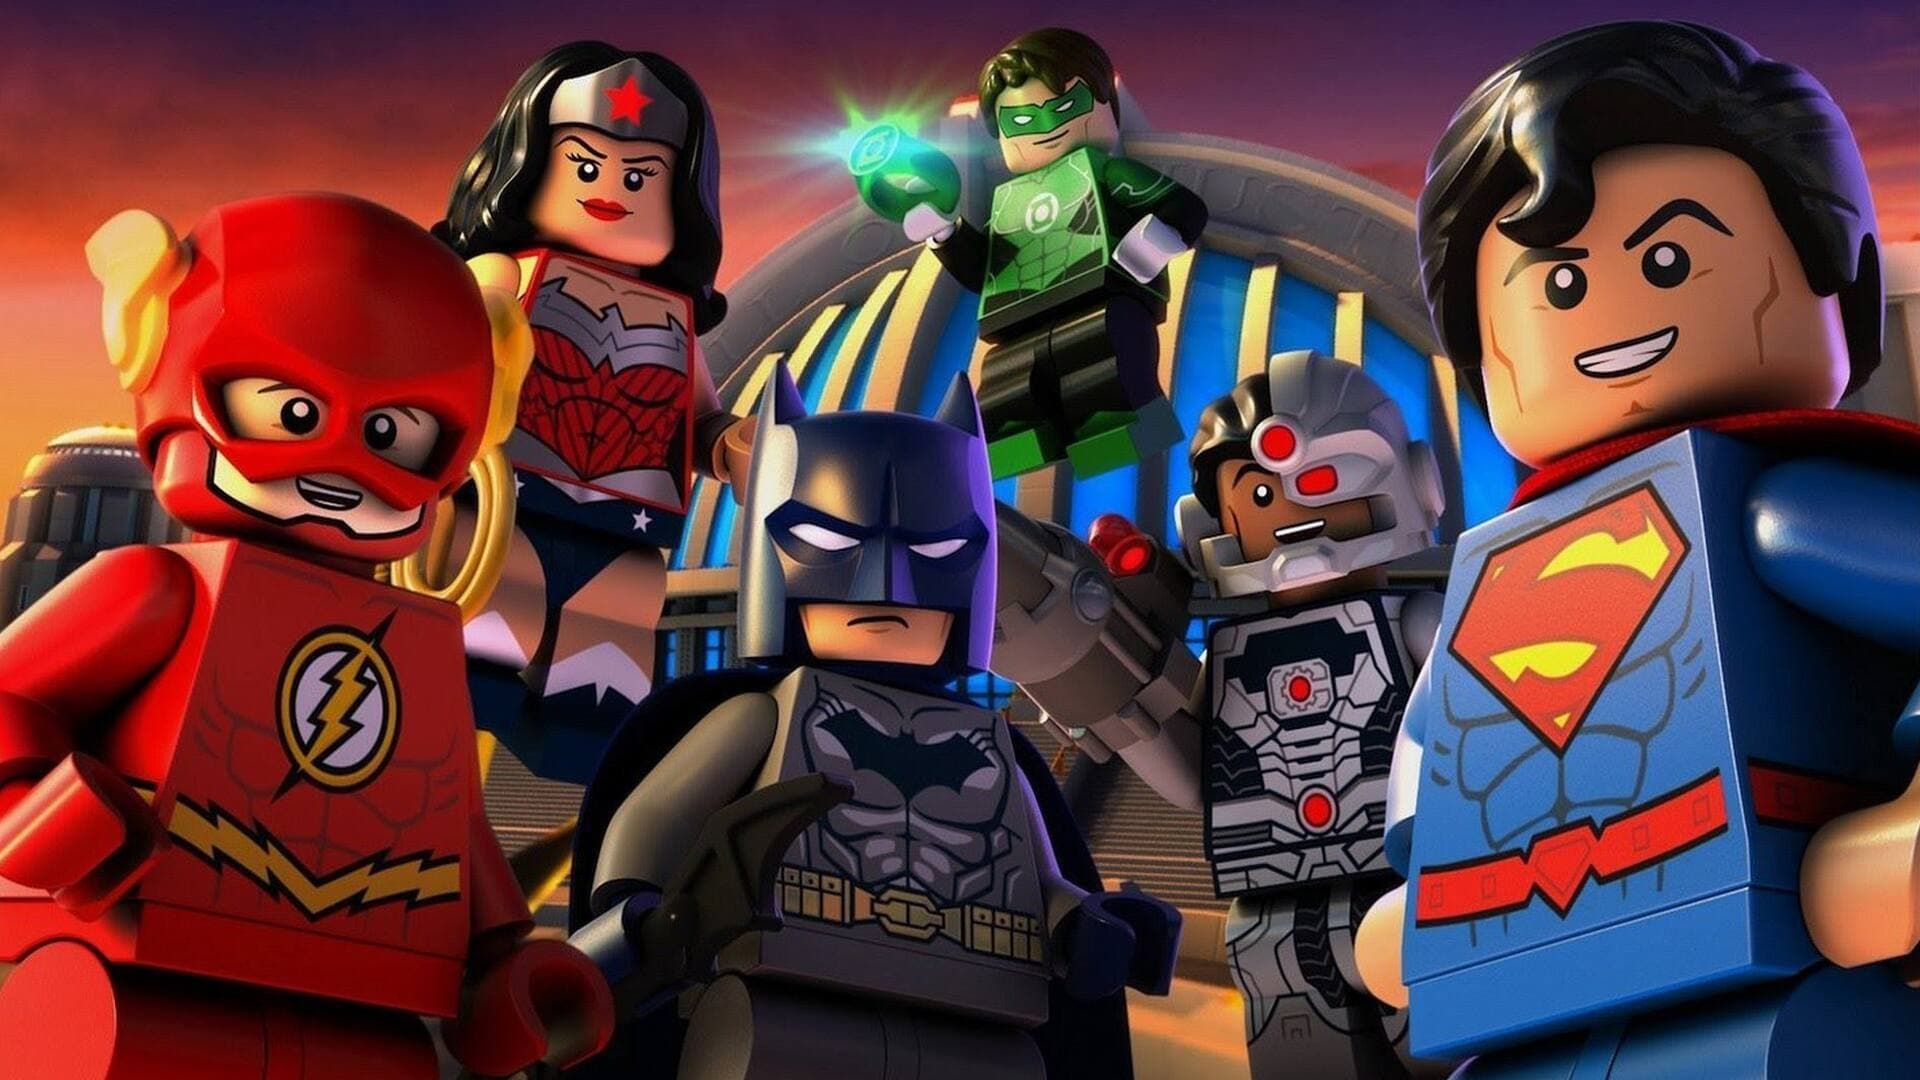 LEGO DC Comics Super Heroes: La liga de la justicia - La invasión de Brainiac (2016)